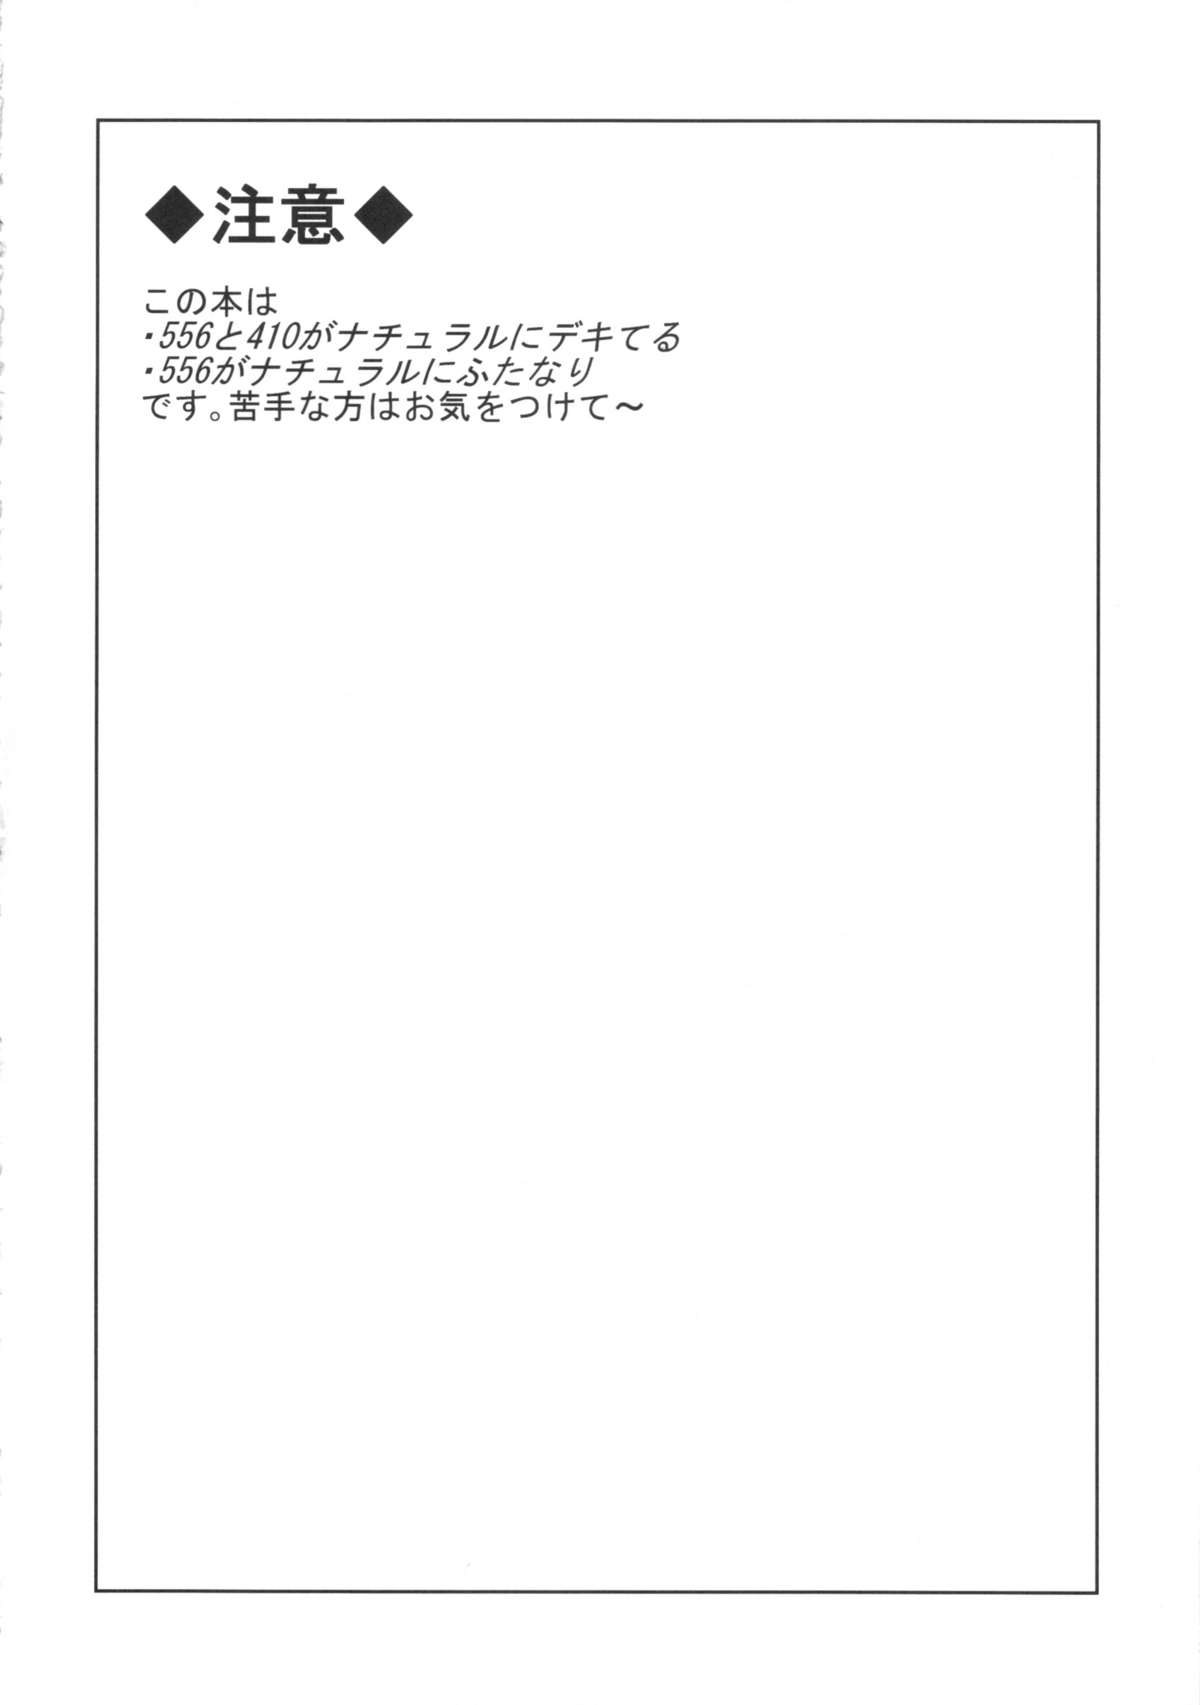 [10der (Komoda)] Hatsujou Endoresu Nain (Umineko no Naku Koro ni) [10der (こもだ)] ハツジョウエンドレスナイン (うみねこのなく頃に)